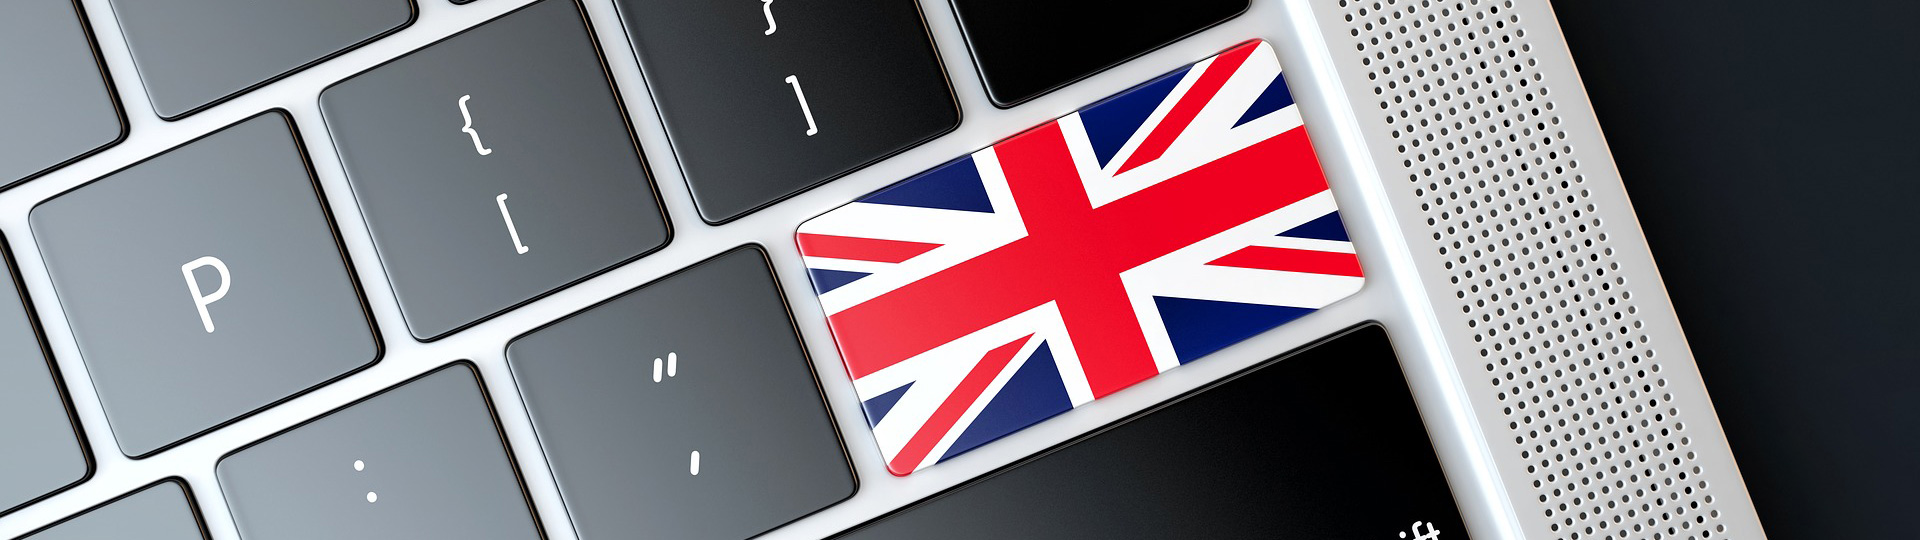 Bild zeigt eine Computertastatur wo eine der Tasten durch die Flagge von Großbritannien ersetzt ist